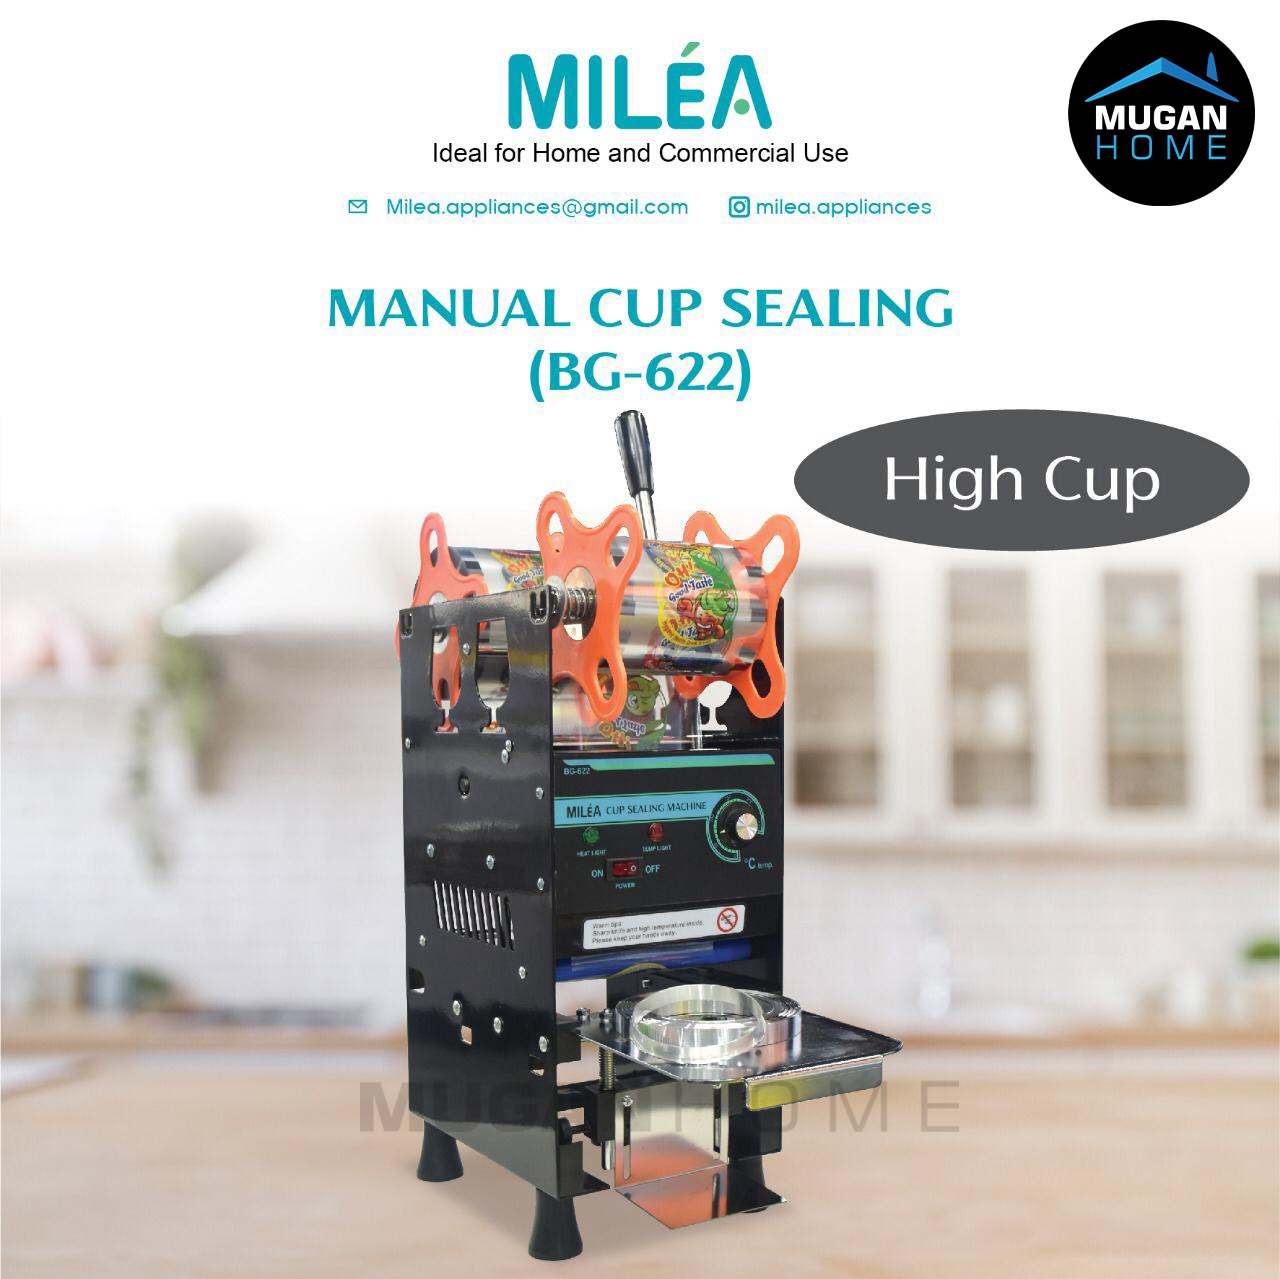 mugan-home-sealer-makanan-milea-manual-cup-sealing